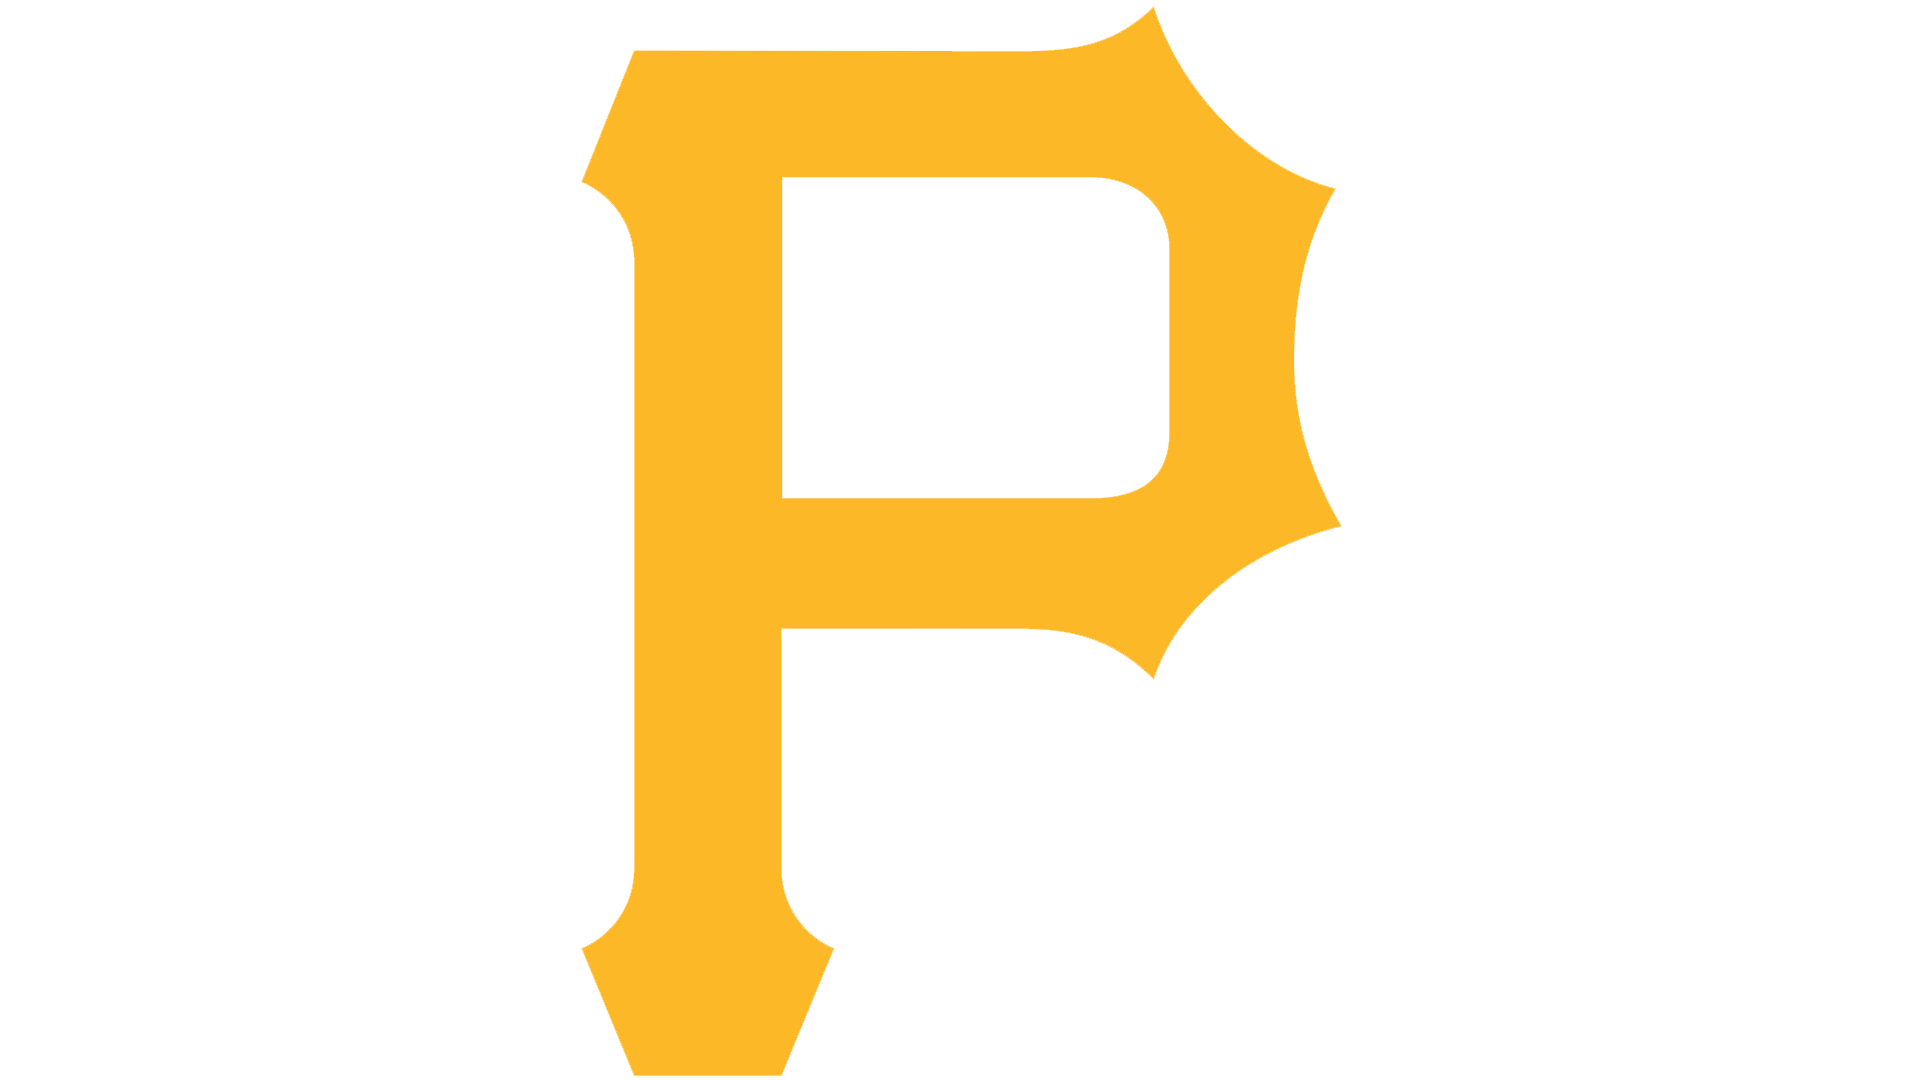 Pittsburgh Pirates P Logo - Pittsburgh Pirates Logo, Pittsburgh Pirates Symbol, Meaning, History ...